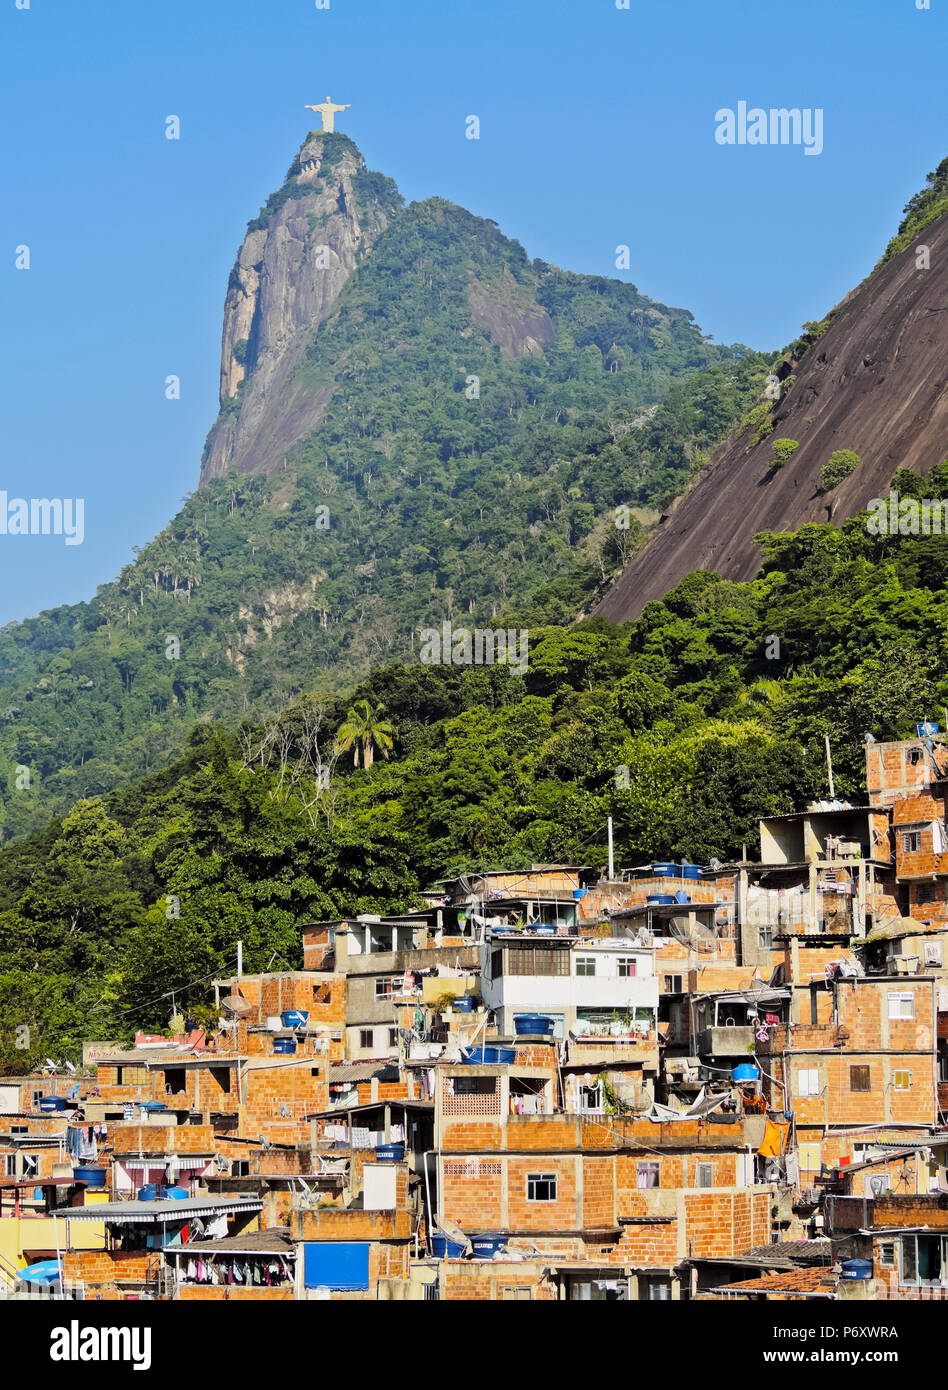 Brésil, Rio de Janeiro, vue de la Favela Santa Marta avec Corcovado et la Statue du Christ derrière. Banque D'Images